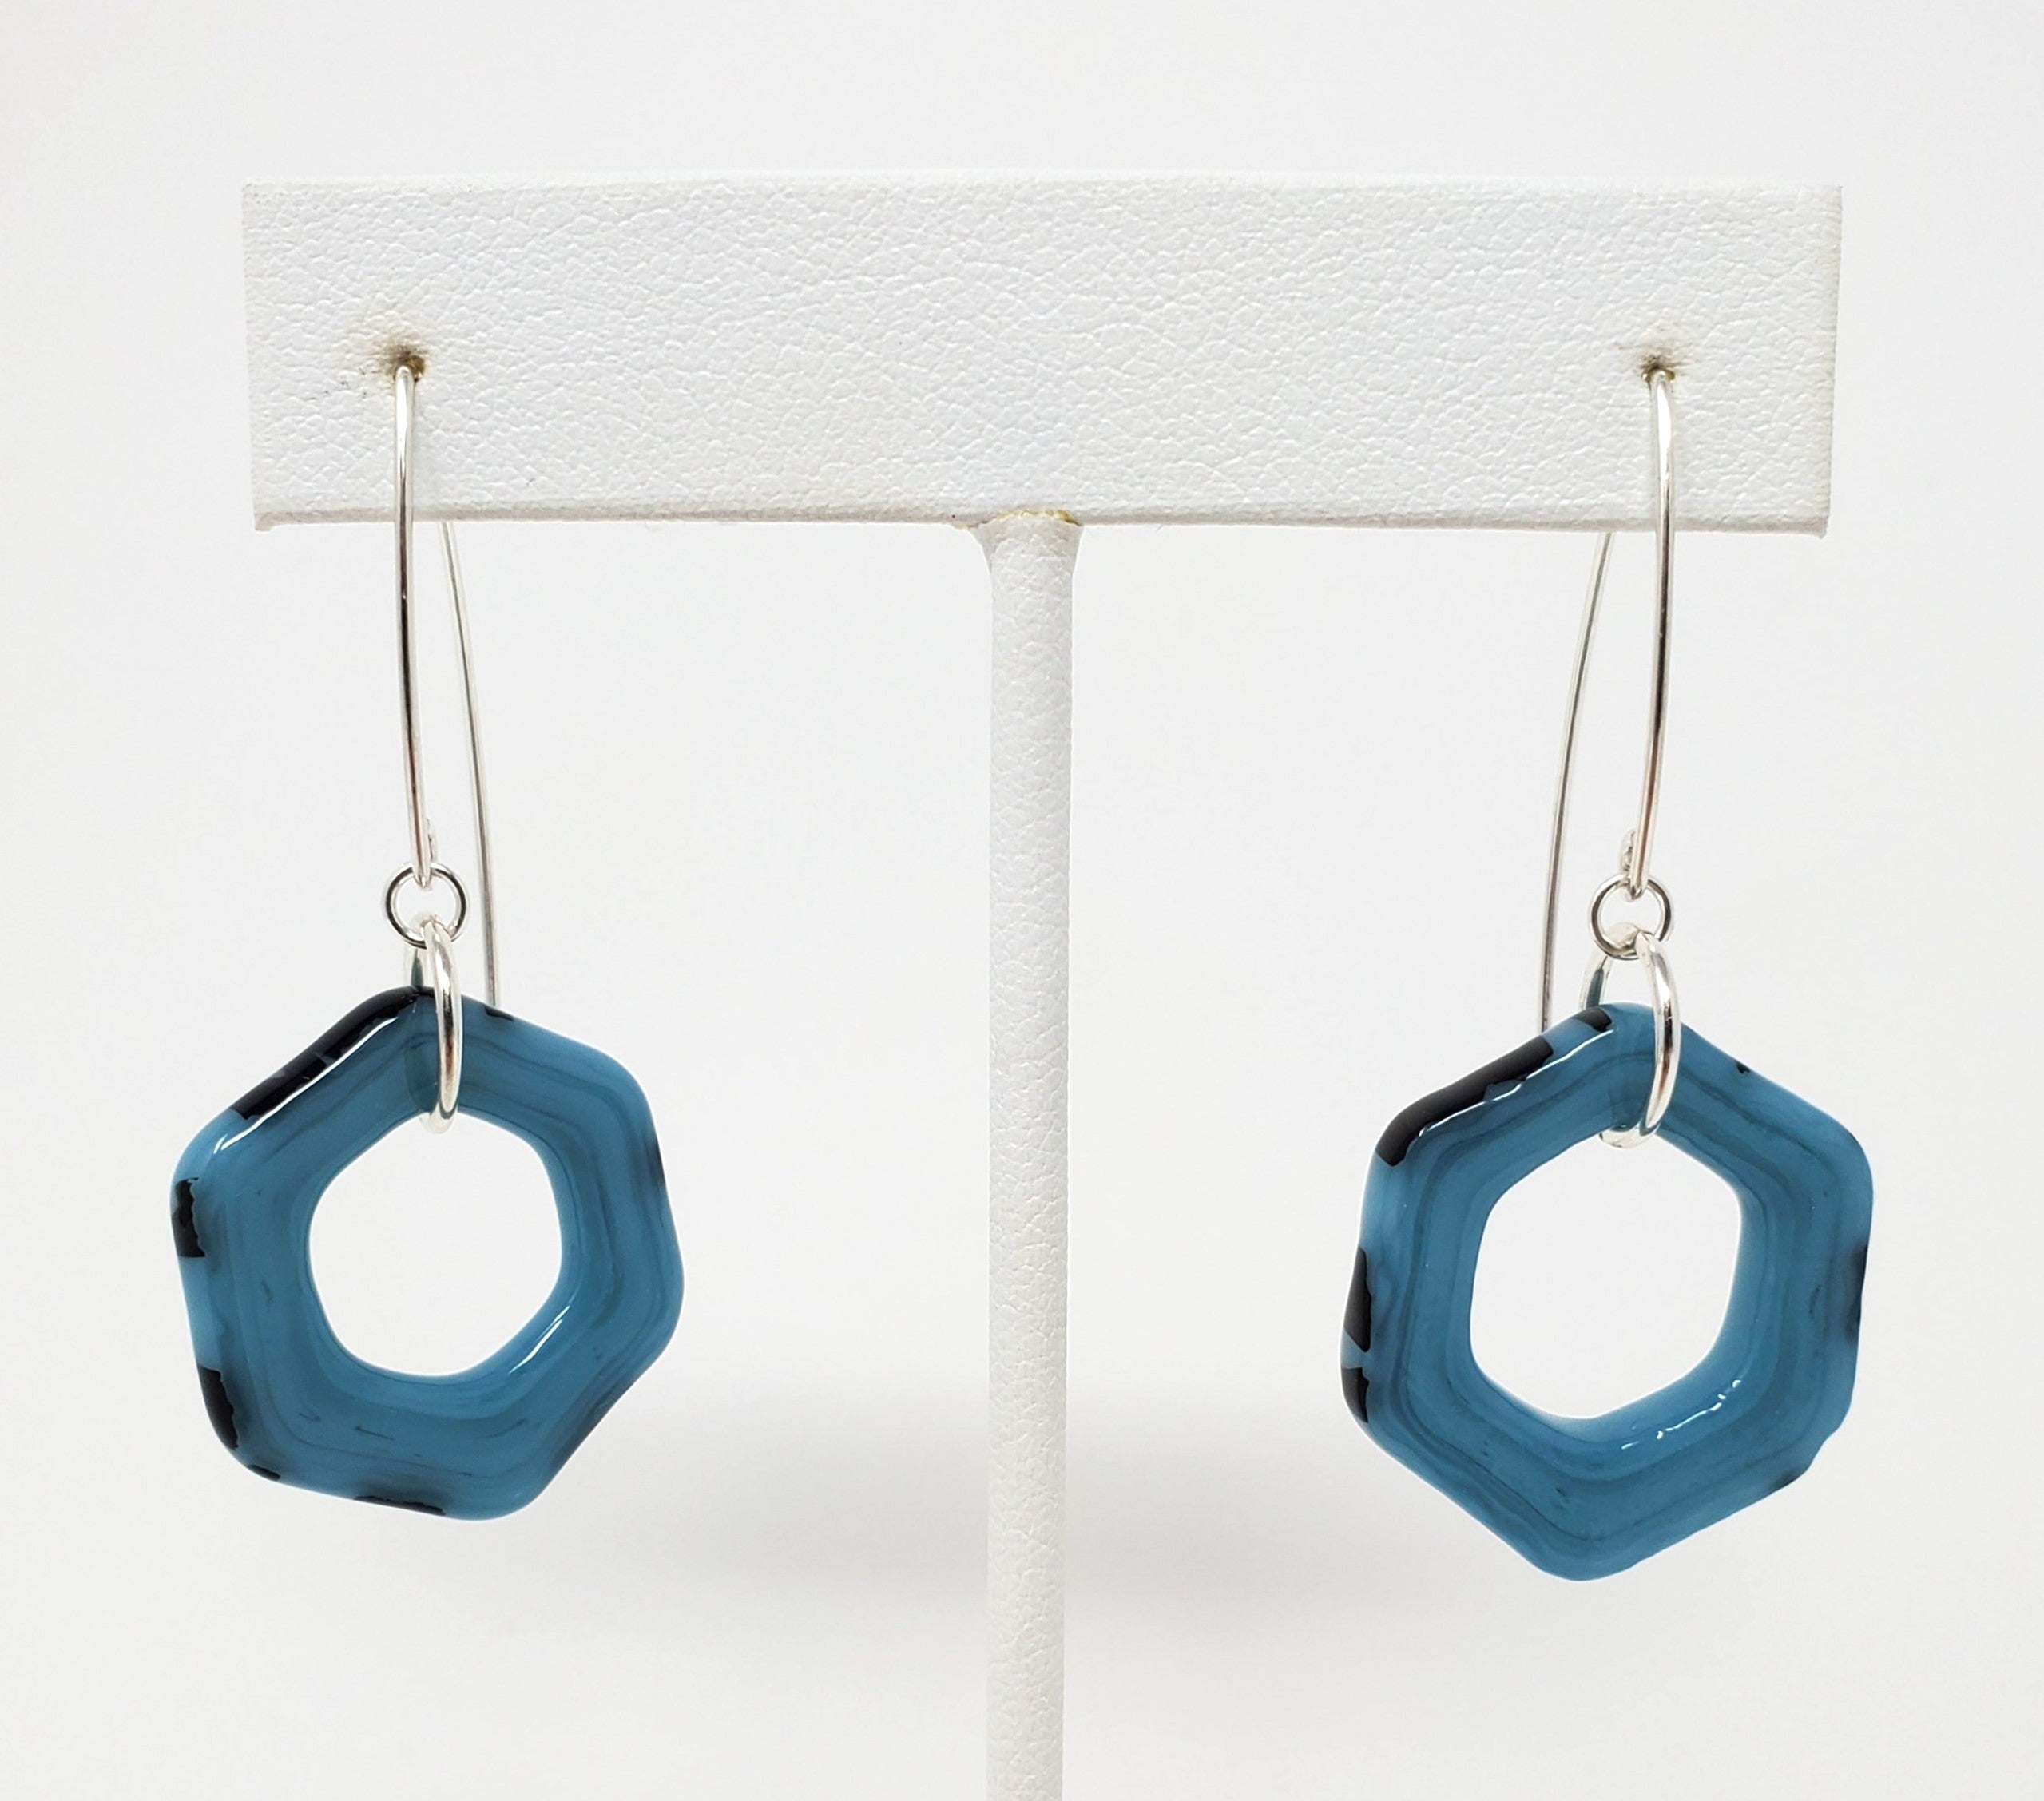 Blue with Black Wrap Glass Earrings by Kait Rhoads